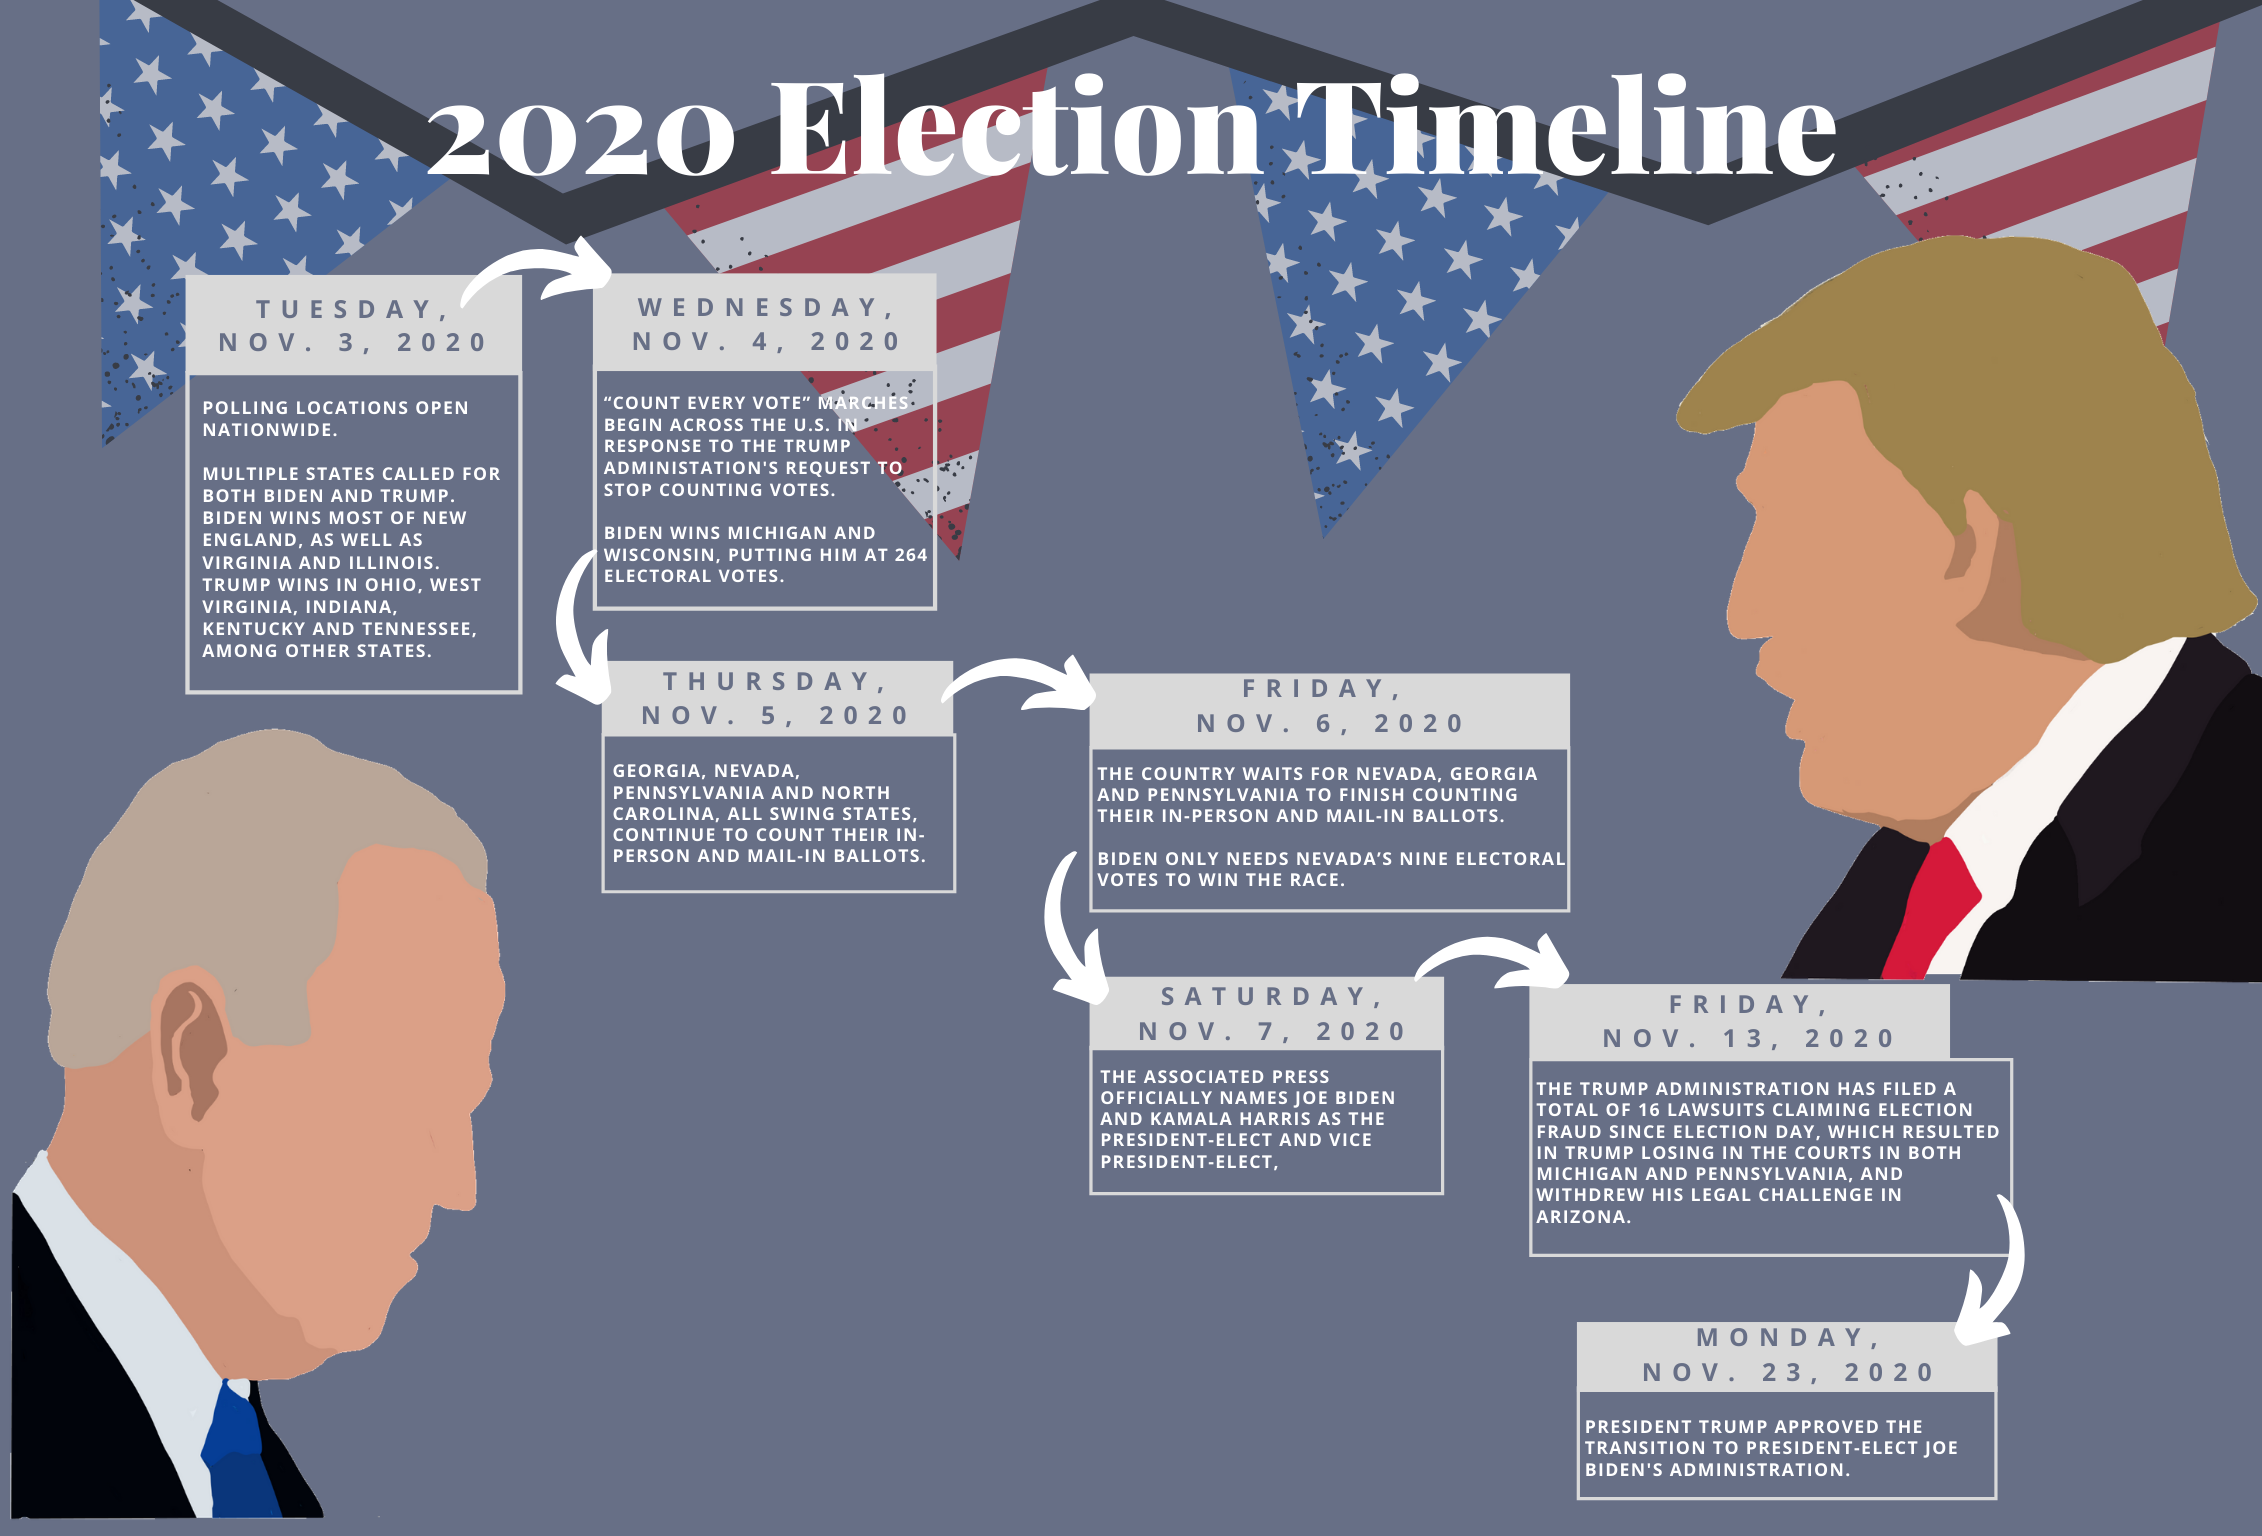 Выборы 2024 до какого часа